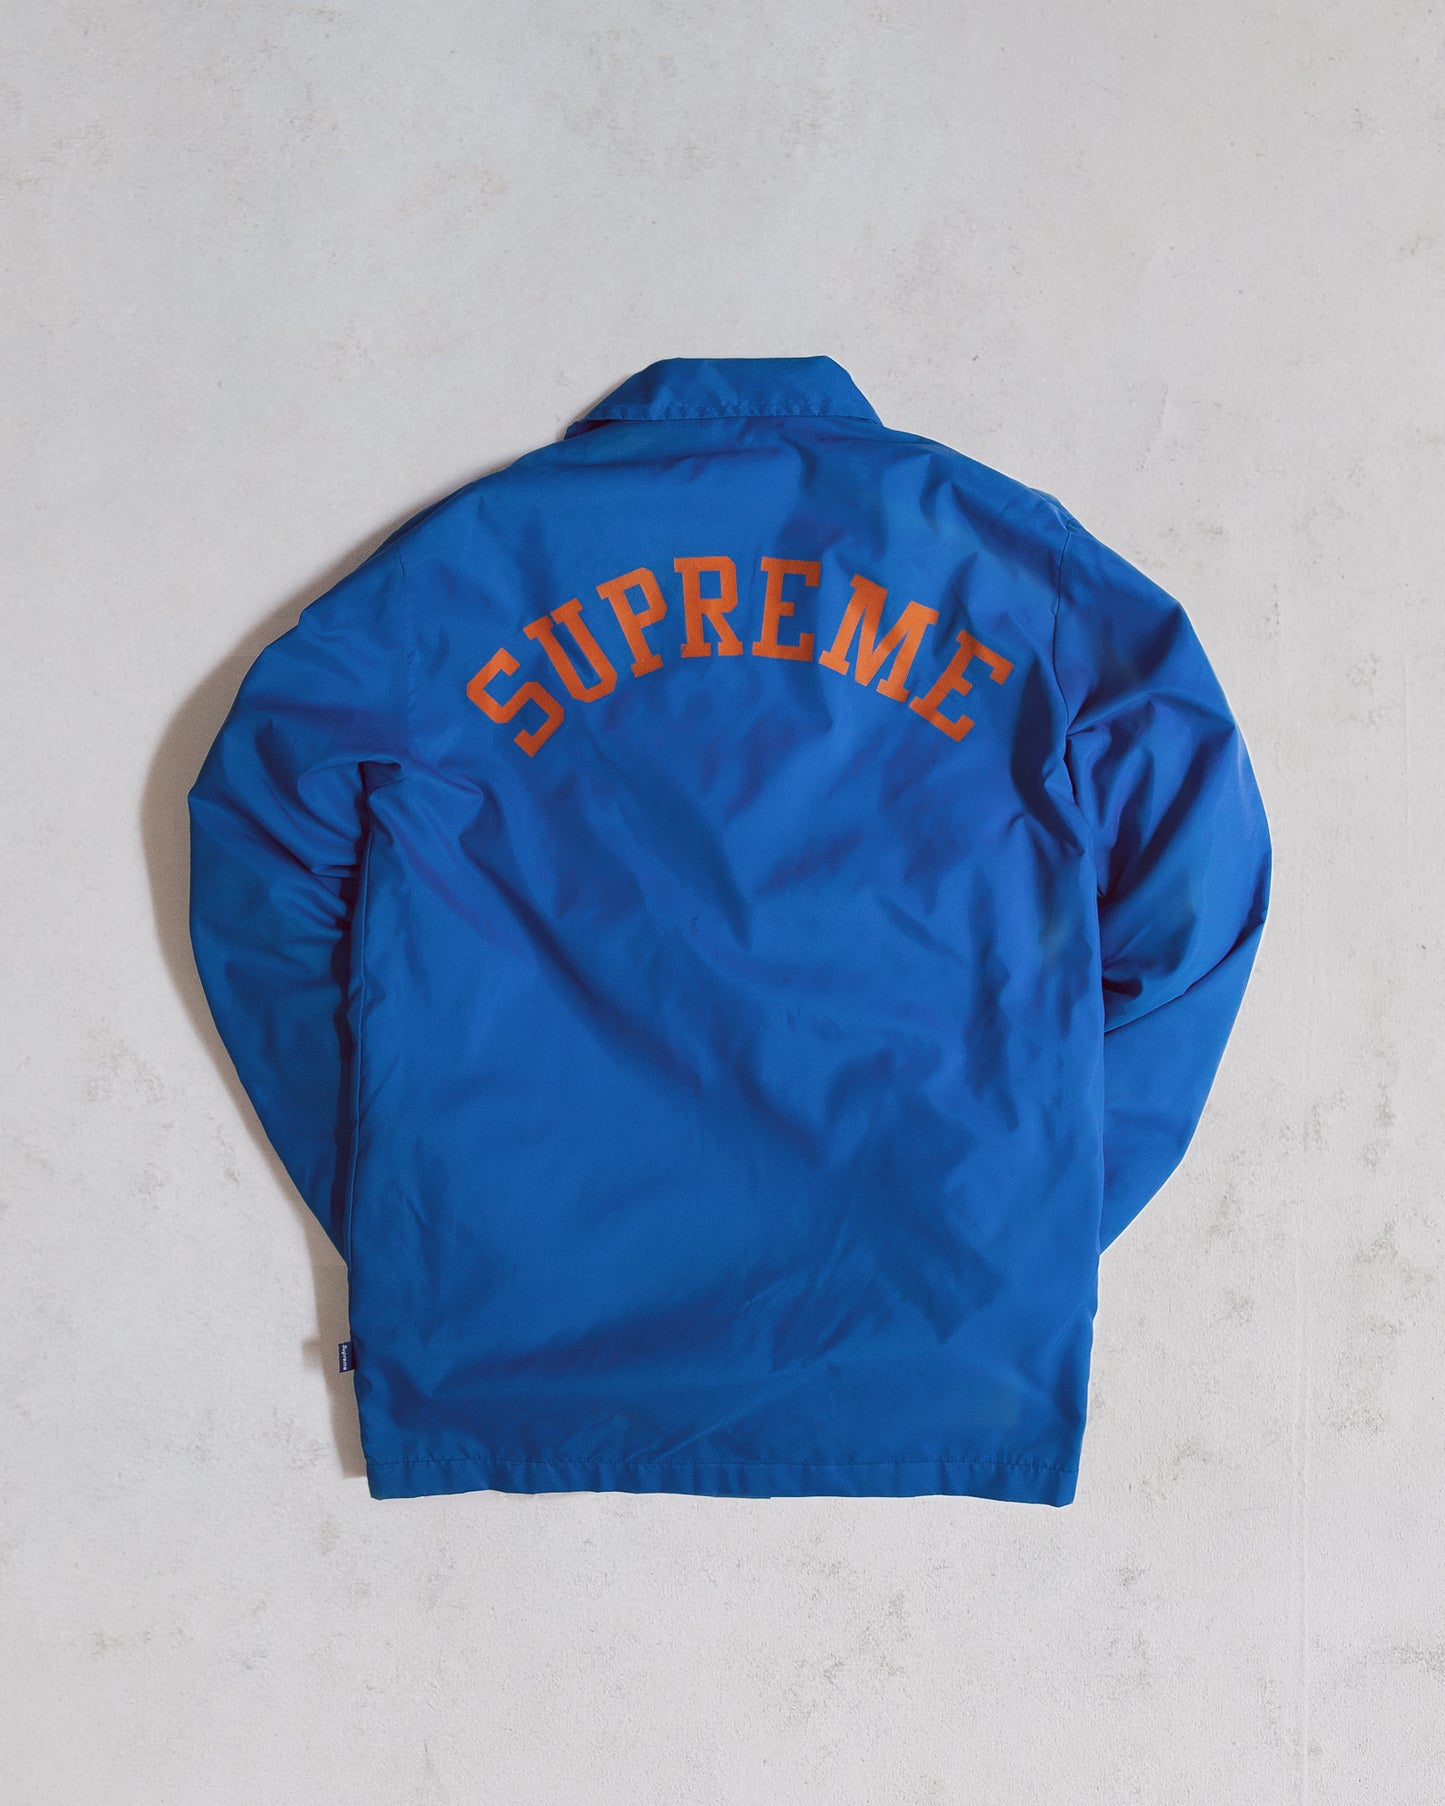 Vintage Supreme Coach Jacket blue orange Knicks Mets